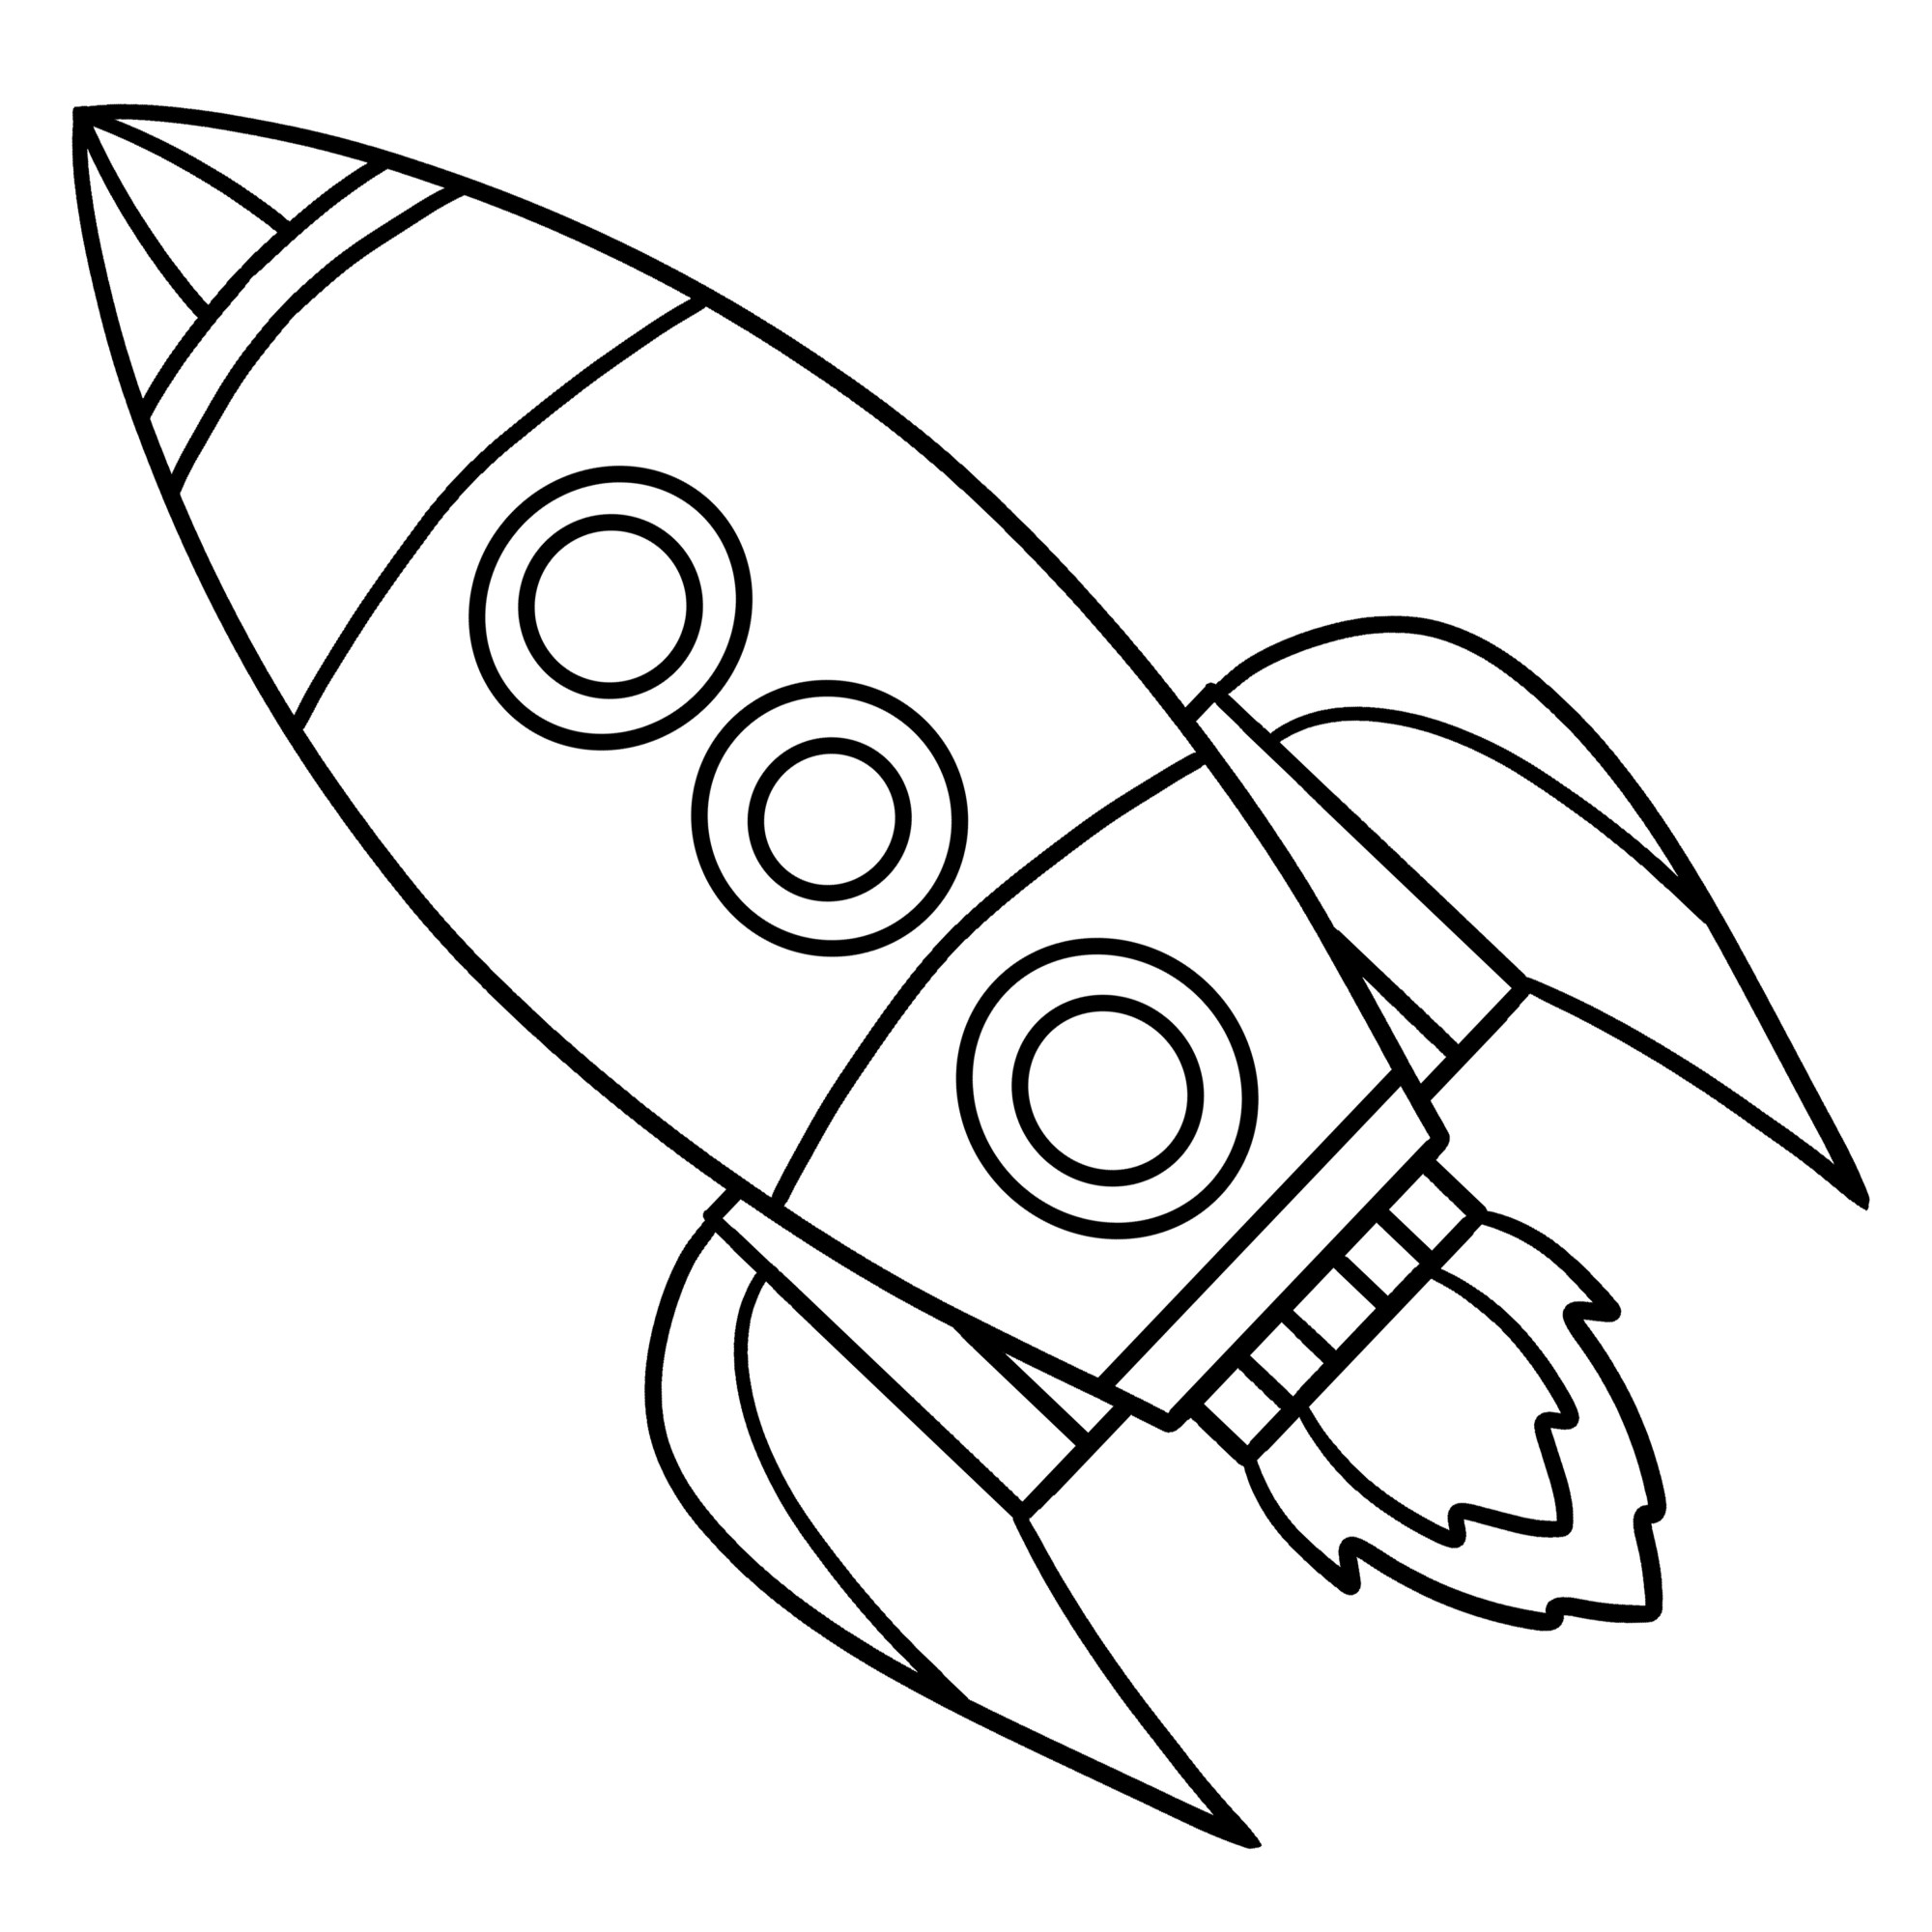 Раскраска для детей: игрушка космический корабль